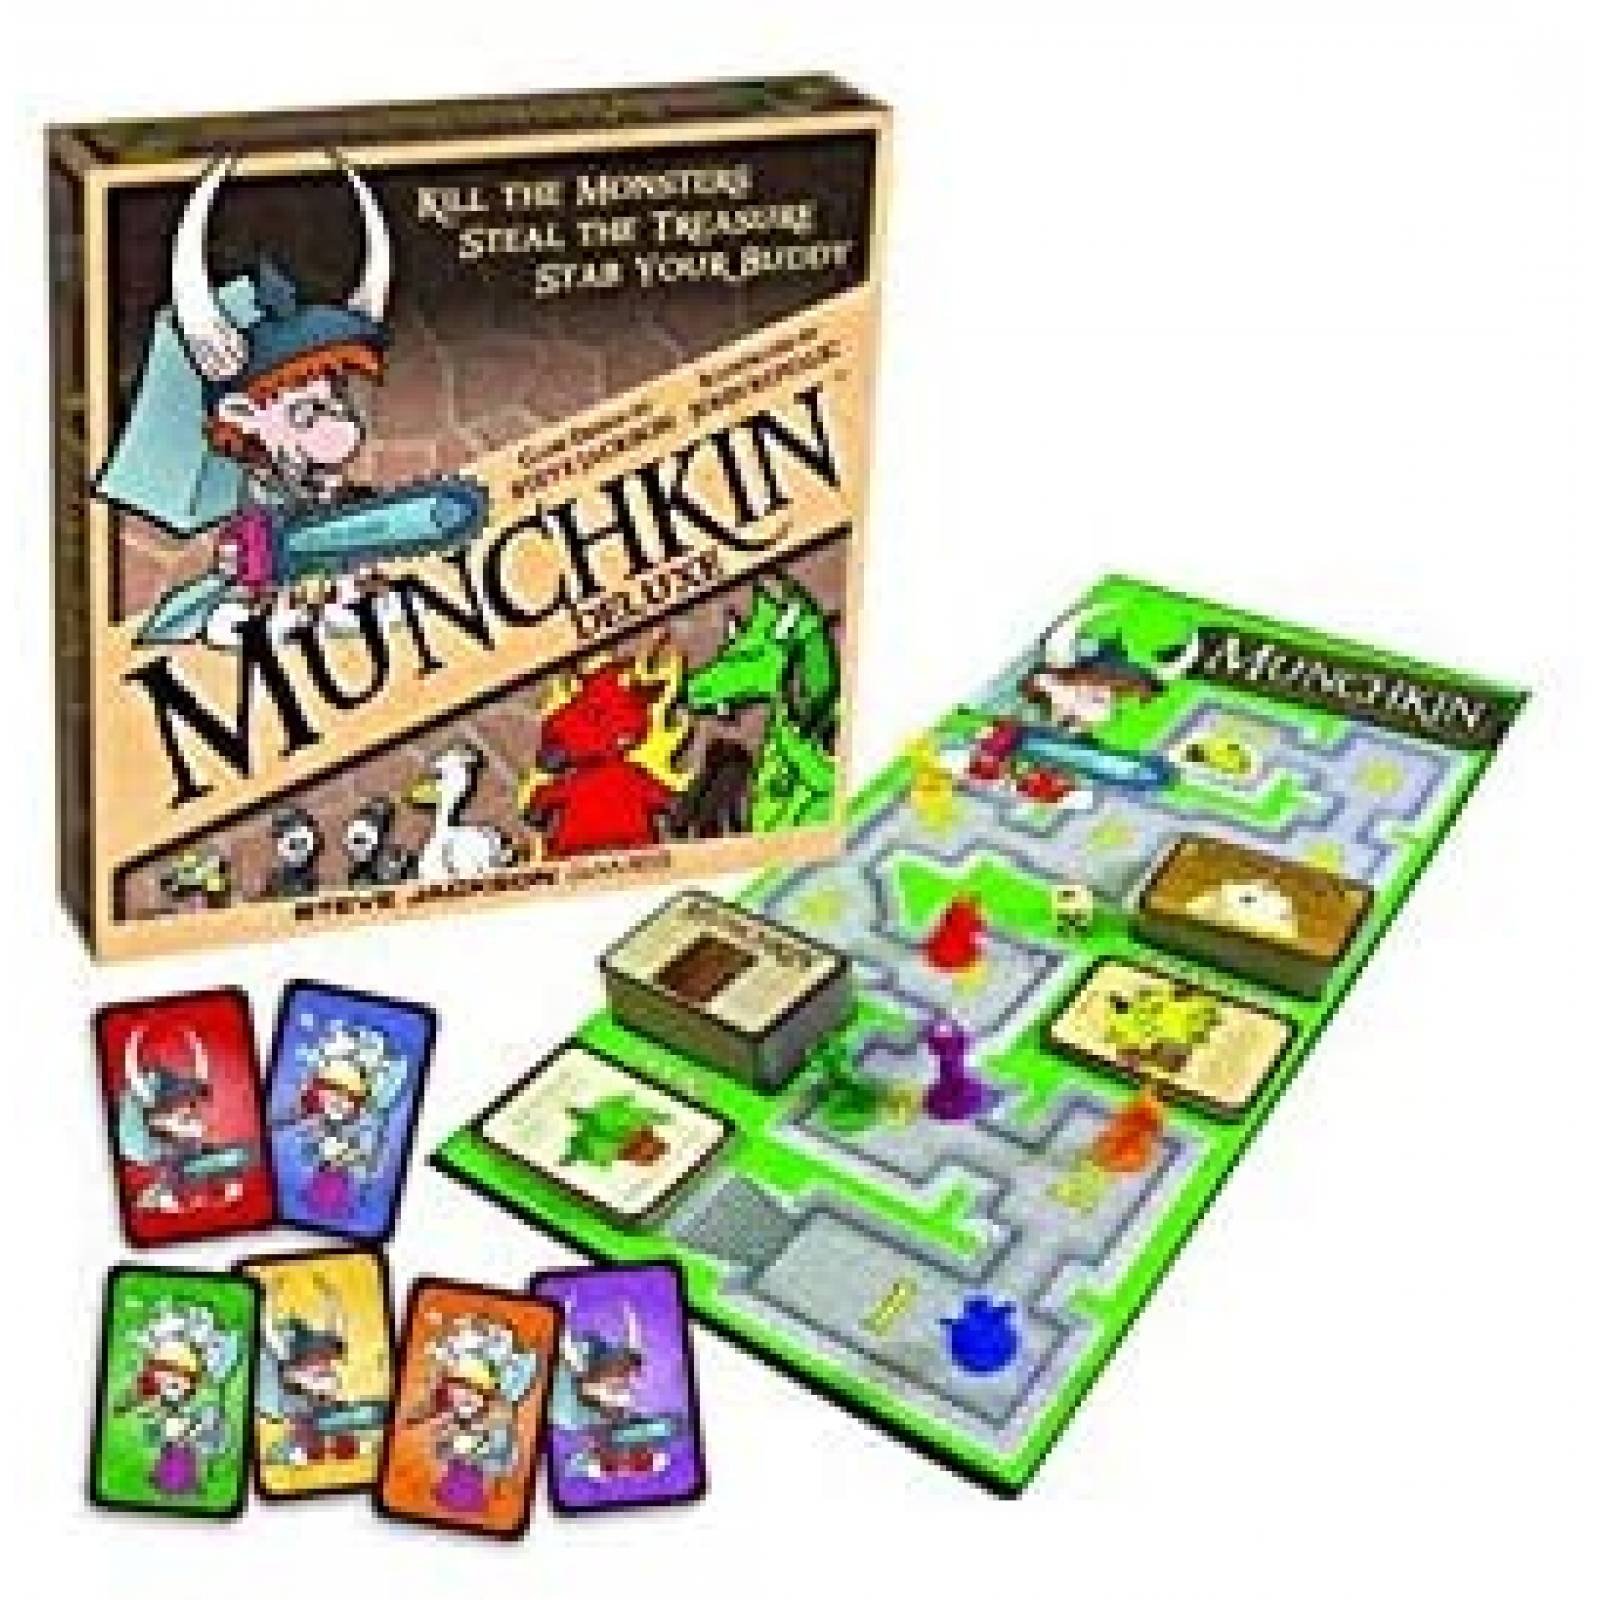 Juego de Mesa Steve Jackson Games Munchkin Deluxe Completo